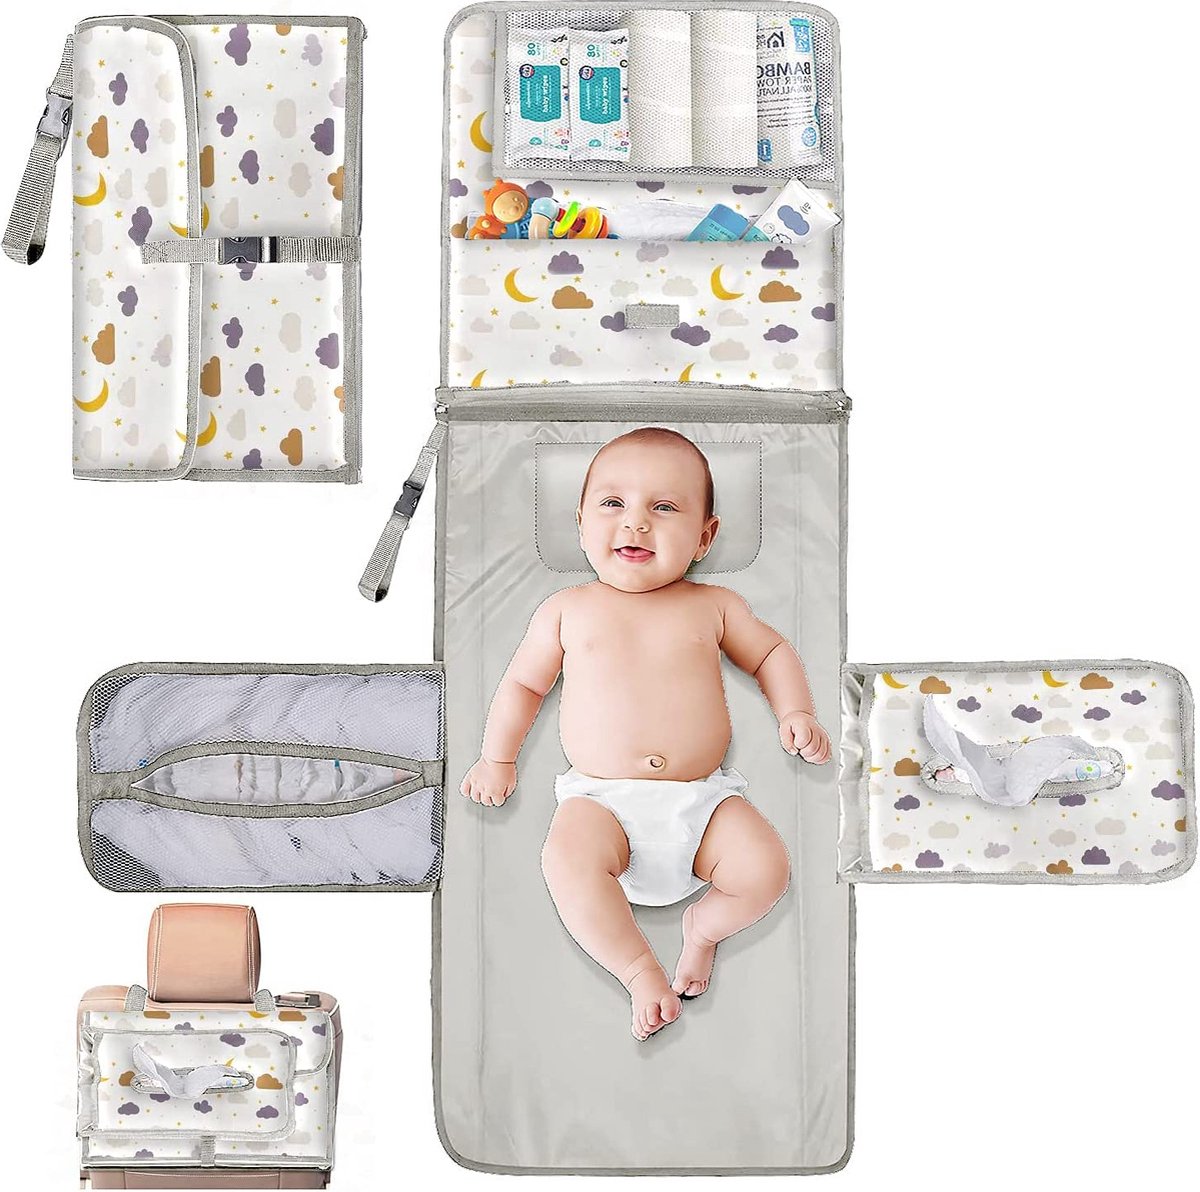 Couche-culotte pour bébé, portable, imperméable, pliable, idéale comme  cadeau pour les